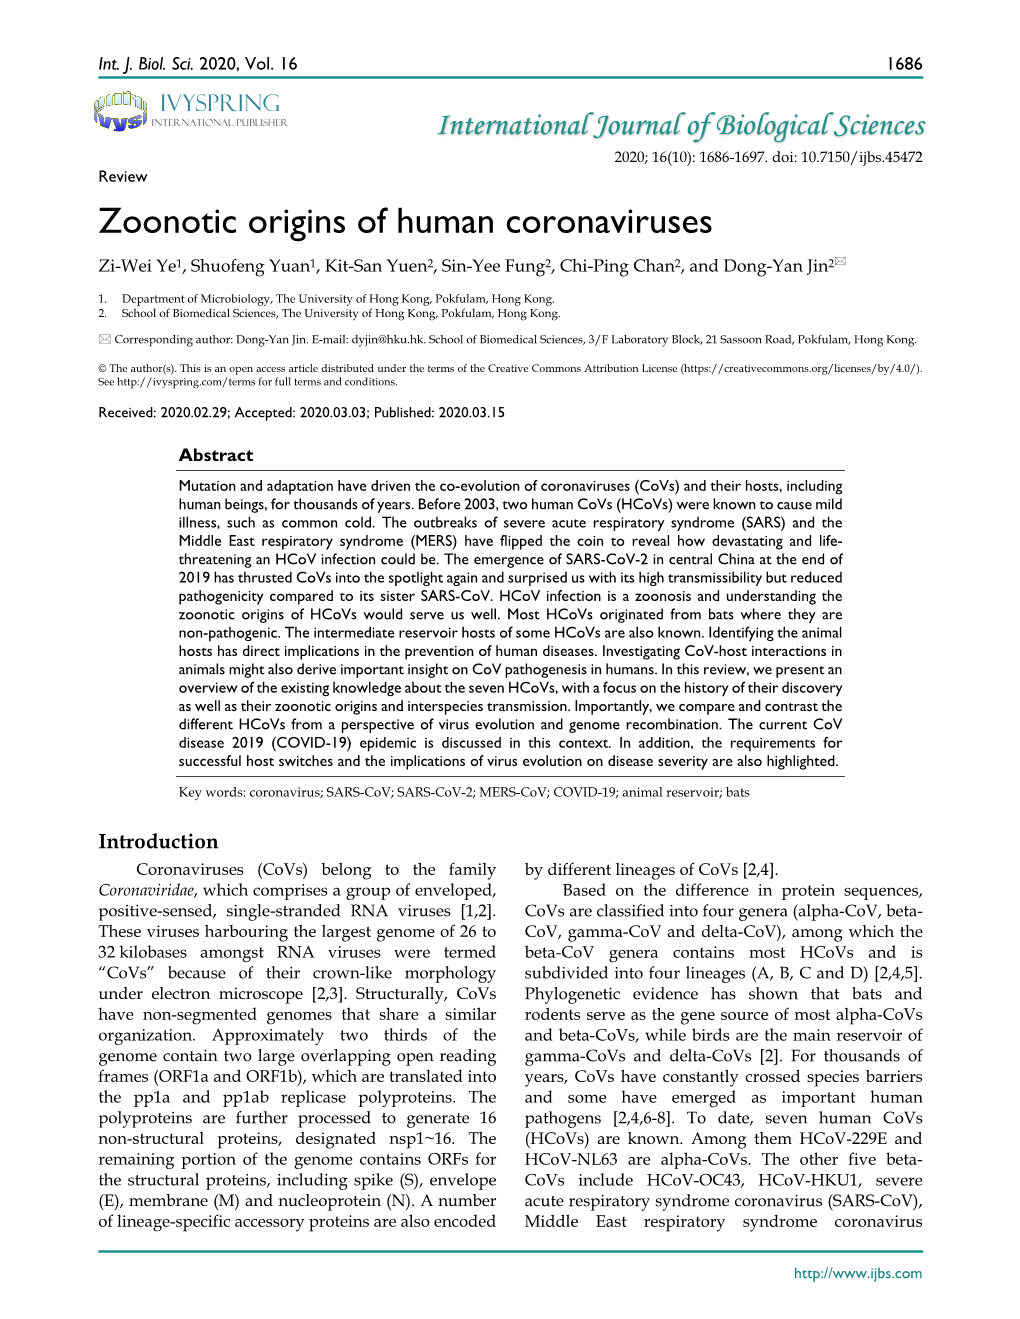 Zoonotic Origins of Human Coronaviruses Zi-Wei Ye1, Shuofeng Yuan1, Kit-San Yuen2, Sin-Yee Fung2, Chi-Ping Chan2, and Dong-Yan Jin2